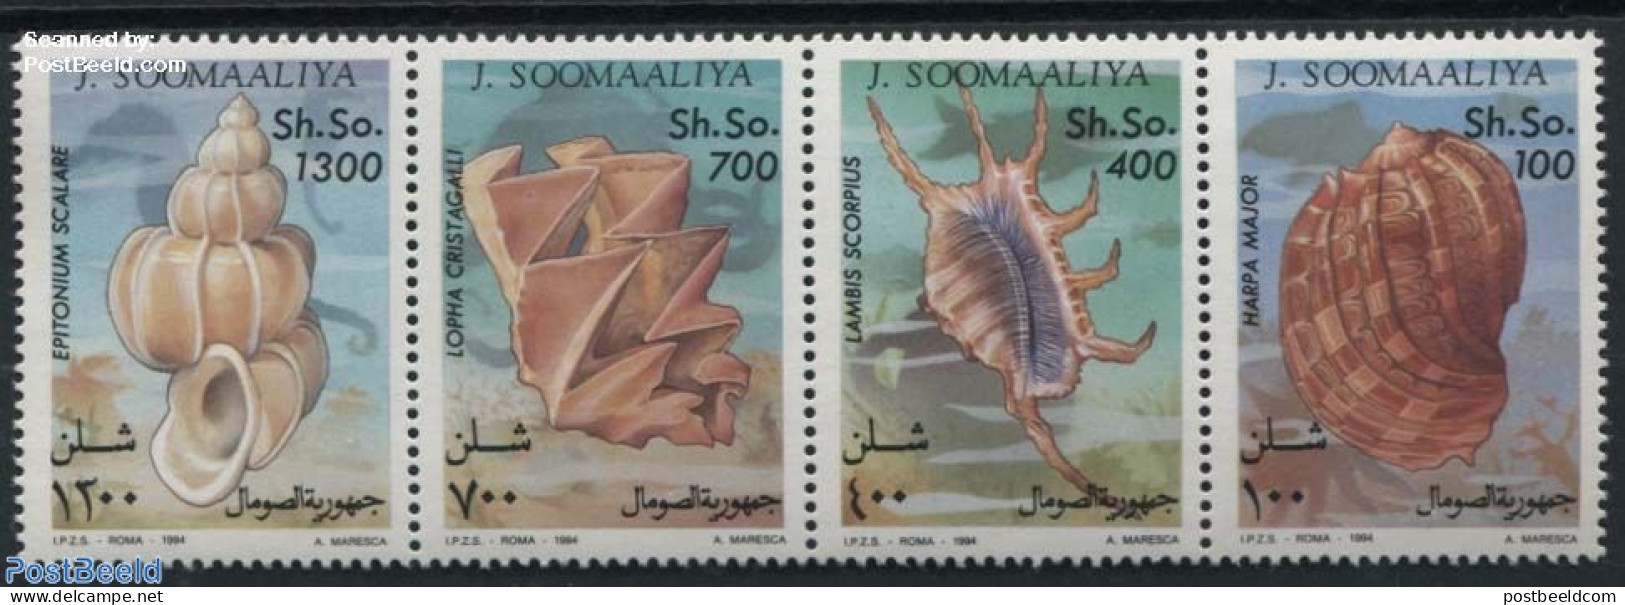 Somalia 1994 Shells 4v, Mint NH, Nature - Shells & Crustaceans - Vita Acquatica